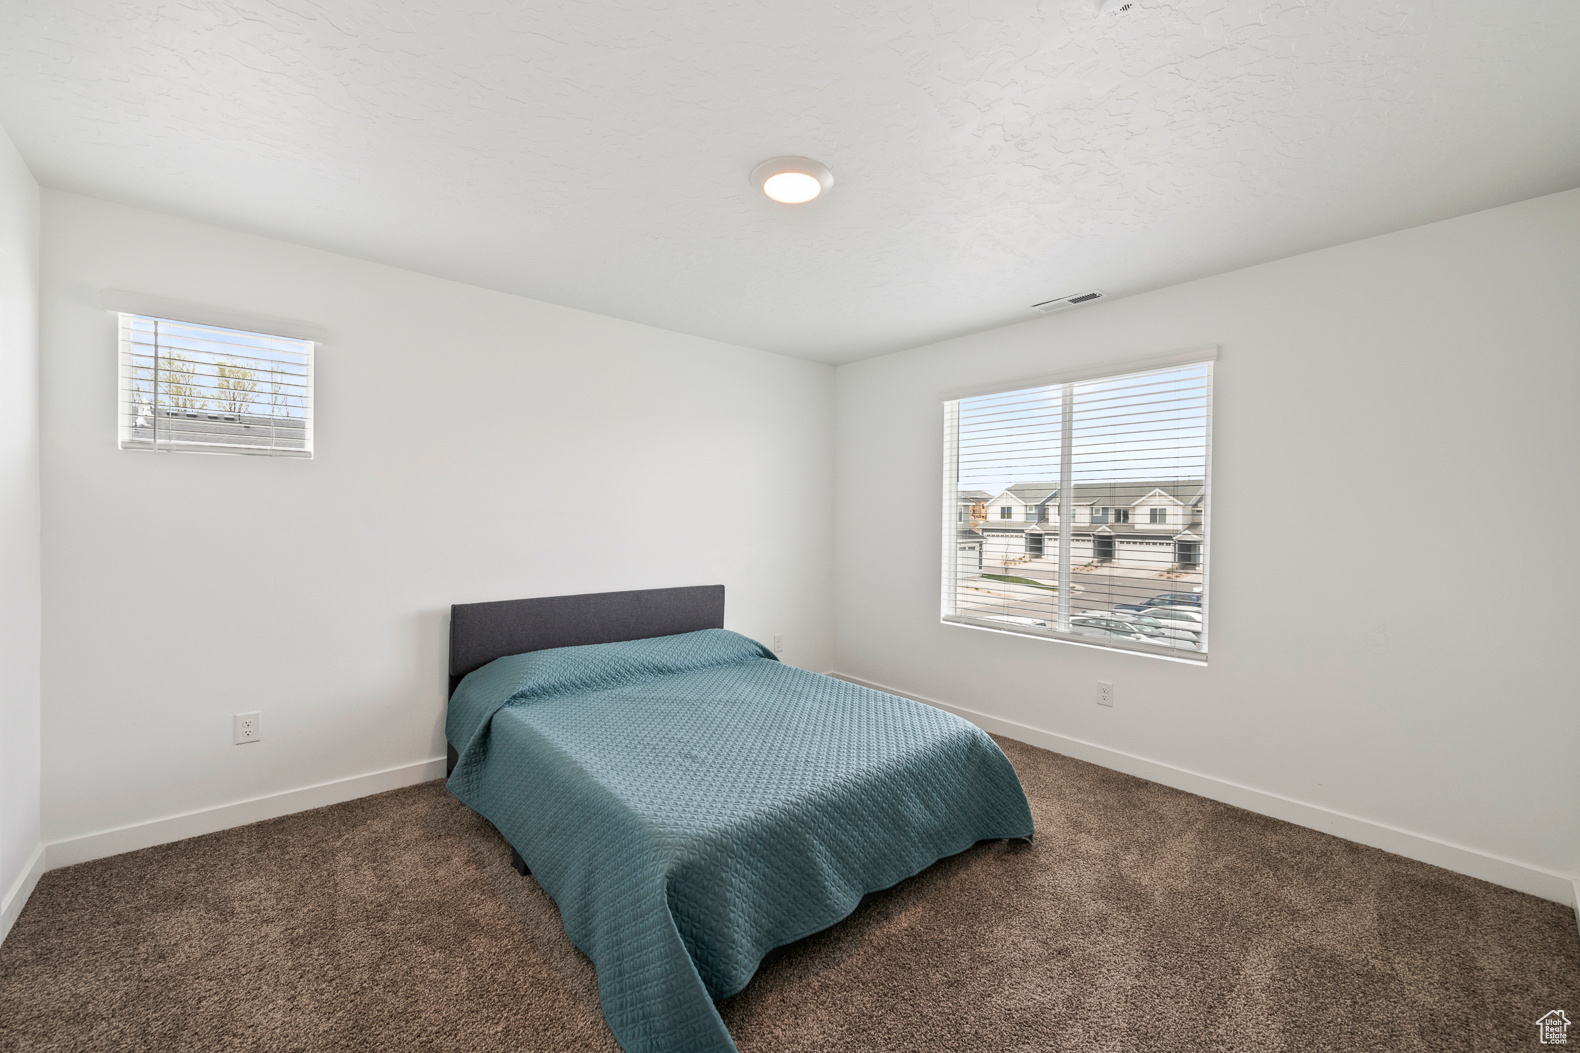 3886 W 860 N, Lehi, Utah 84043, 3 Bedrooms Bedrooms, 9 Rooms Rooms,2 BathroomsBathrooms,Residential,For sale,860,1994004